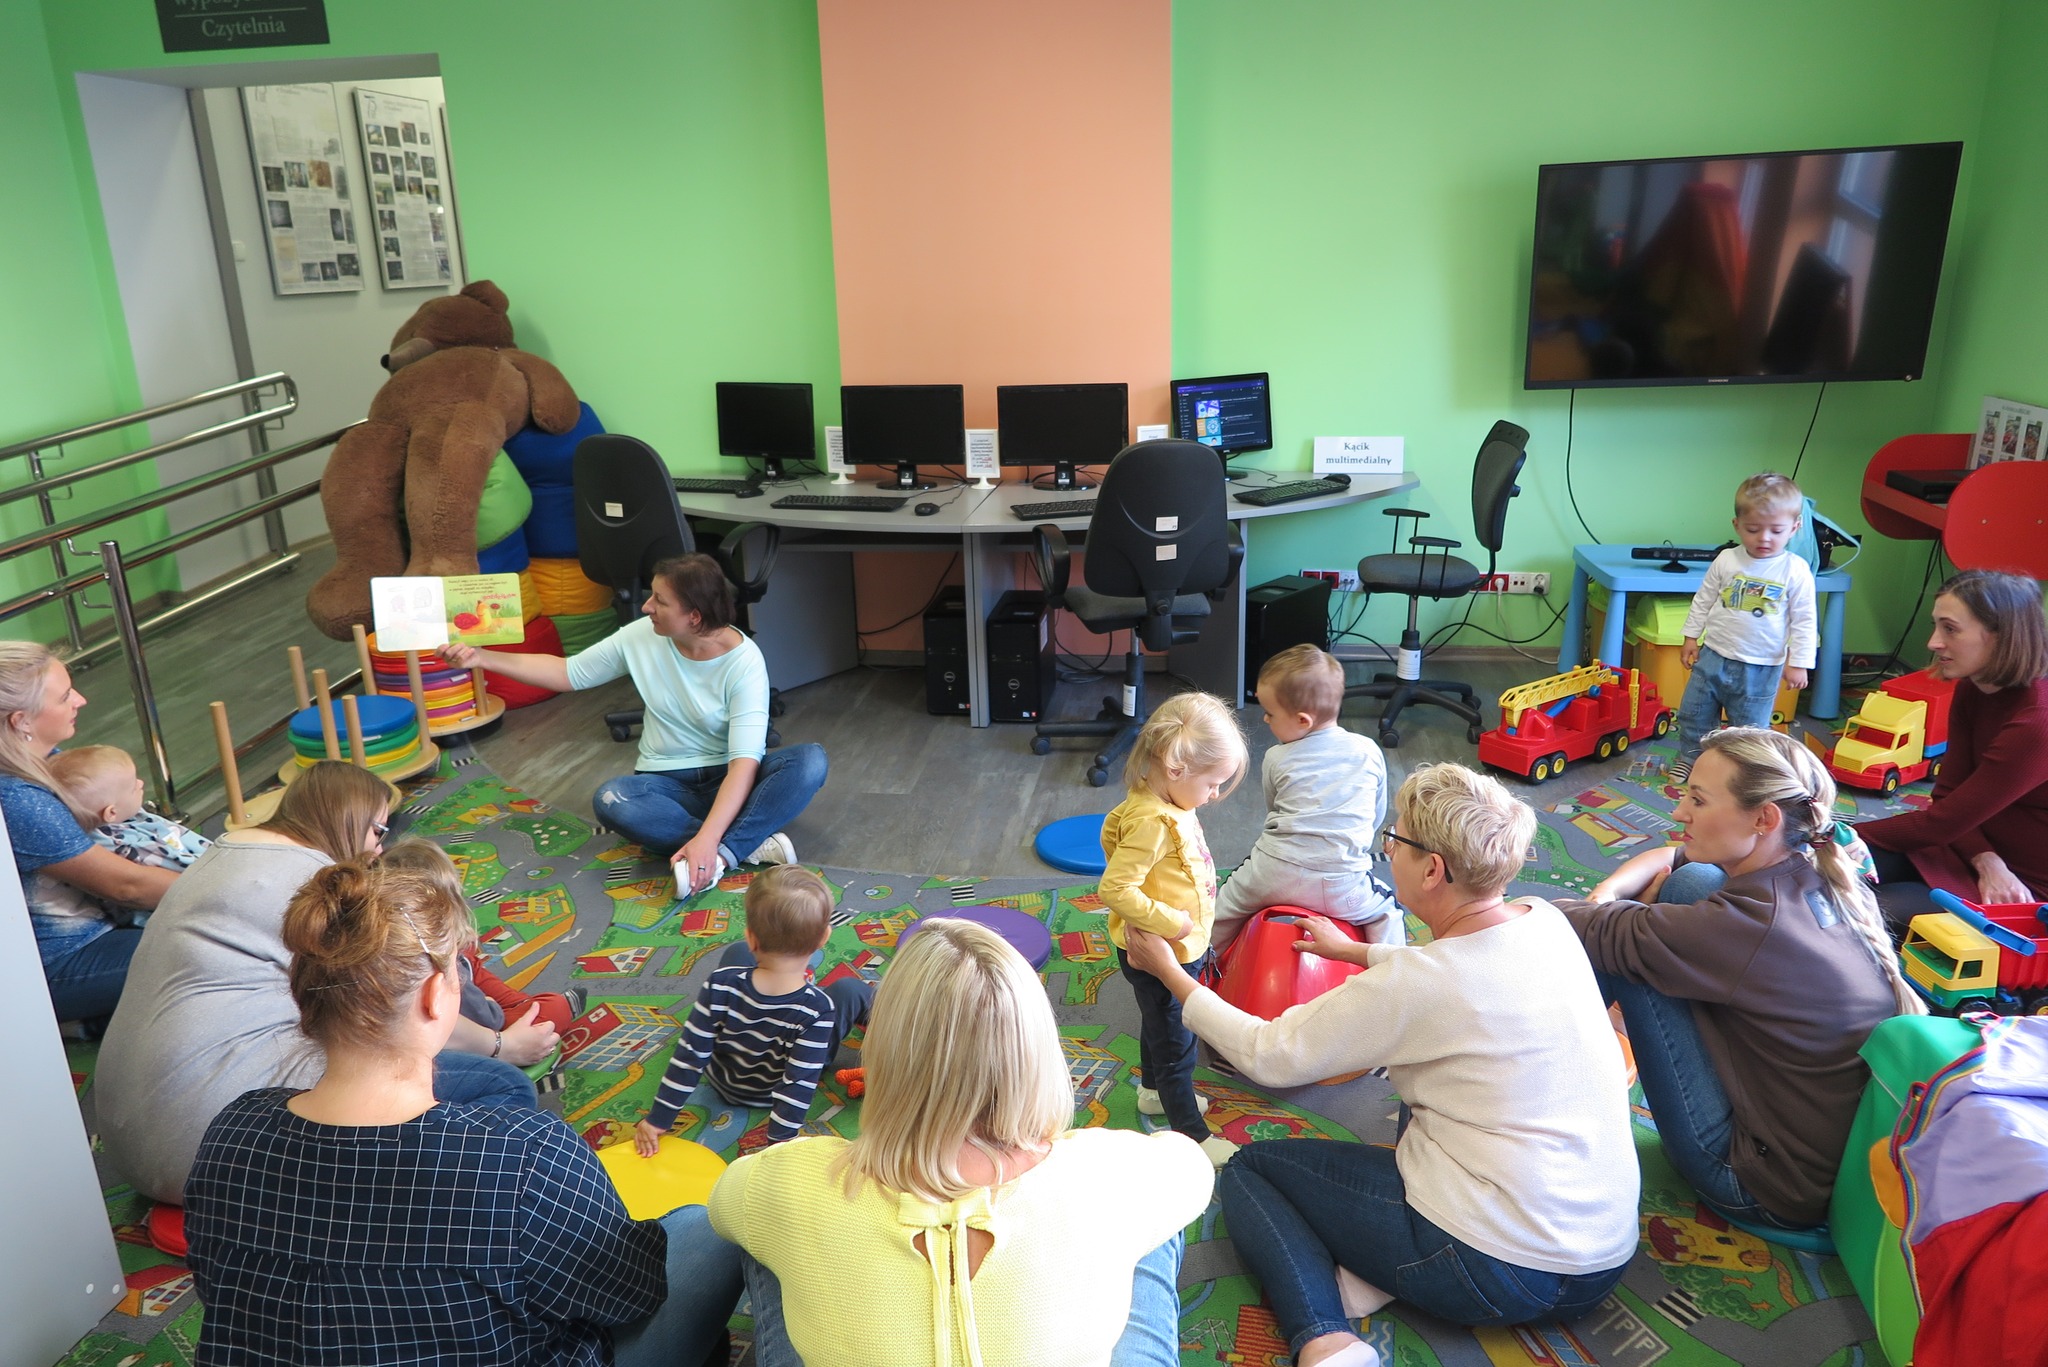 dzieci z rodziacami w oddziale dla dzieci siedzą na dywanie, bibliotekarka pokazuje książkę